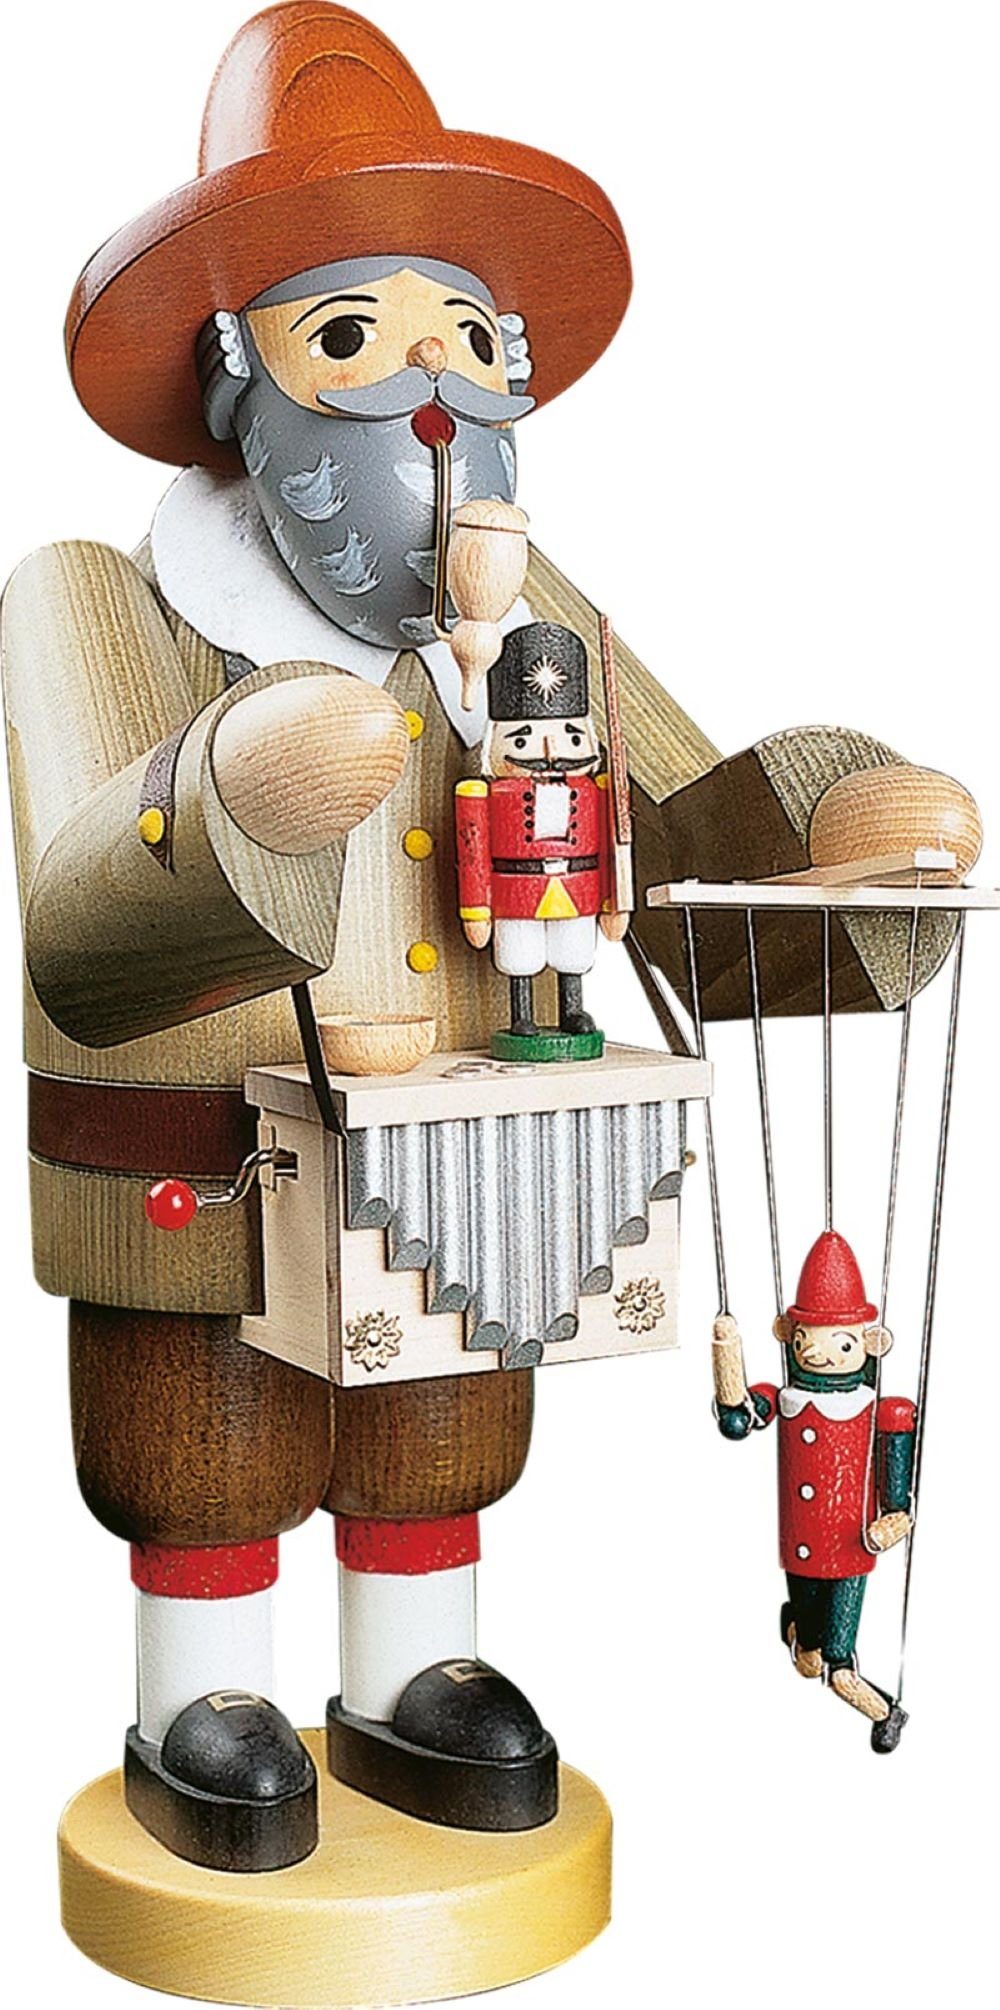 Richard Glaesser Räuchermännchen Puppenspieler mt Erzgebirge Spielwerk, 36cm, Höhe Handwerkskunst original